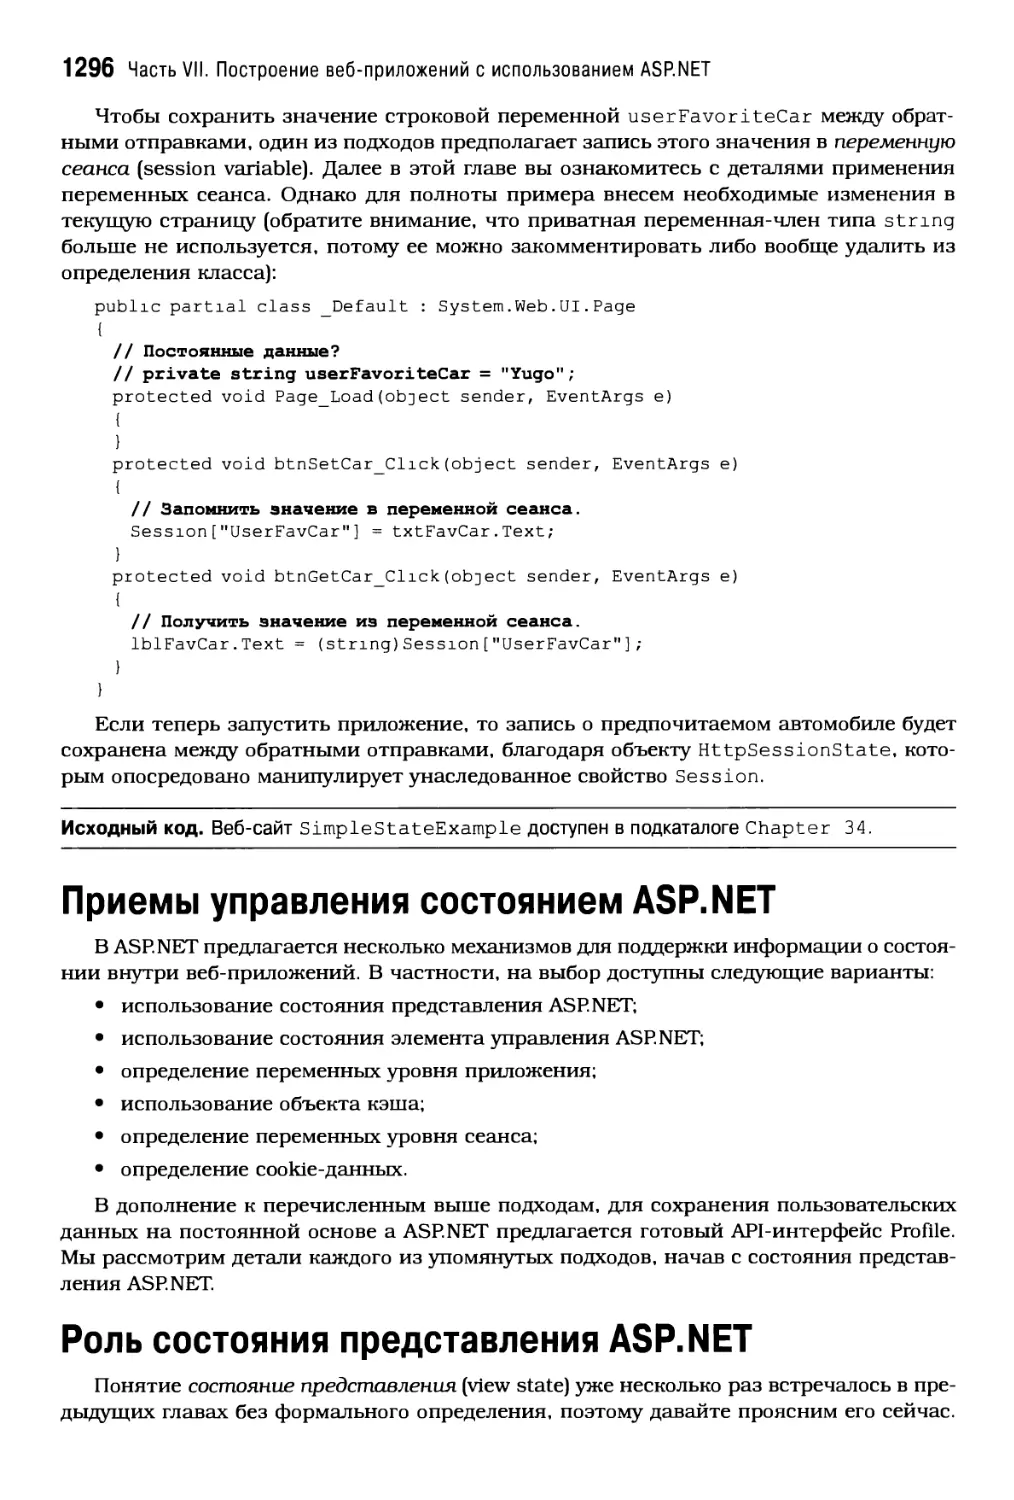 Приемы управления состоянием ASP. NET
Роль состояния представления ASP NET